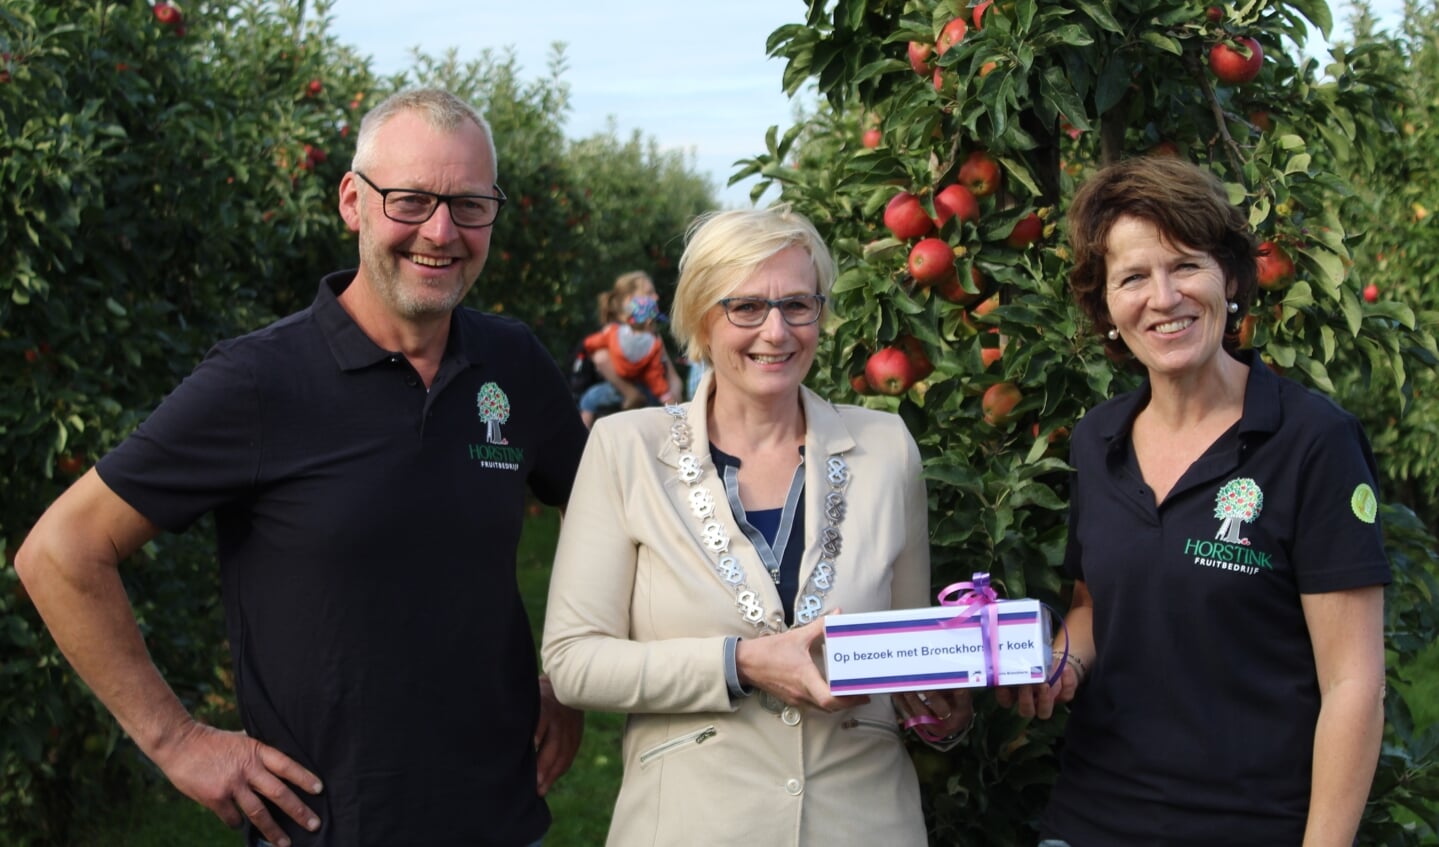 Burgemeester Marianne Besselink ging bij Tom en Monique Horstink op bezoek met Bronckhorster koek. Foto: PR